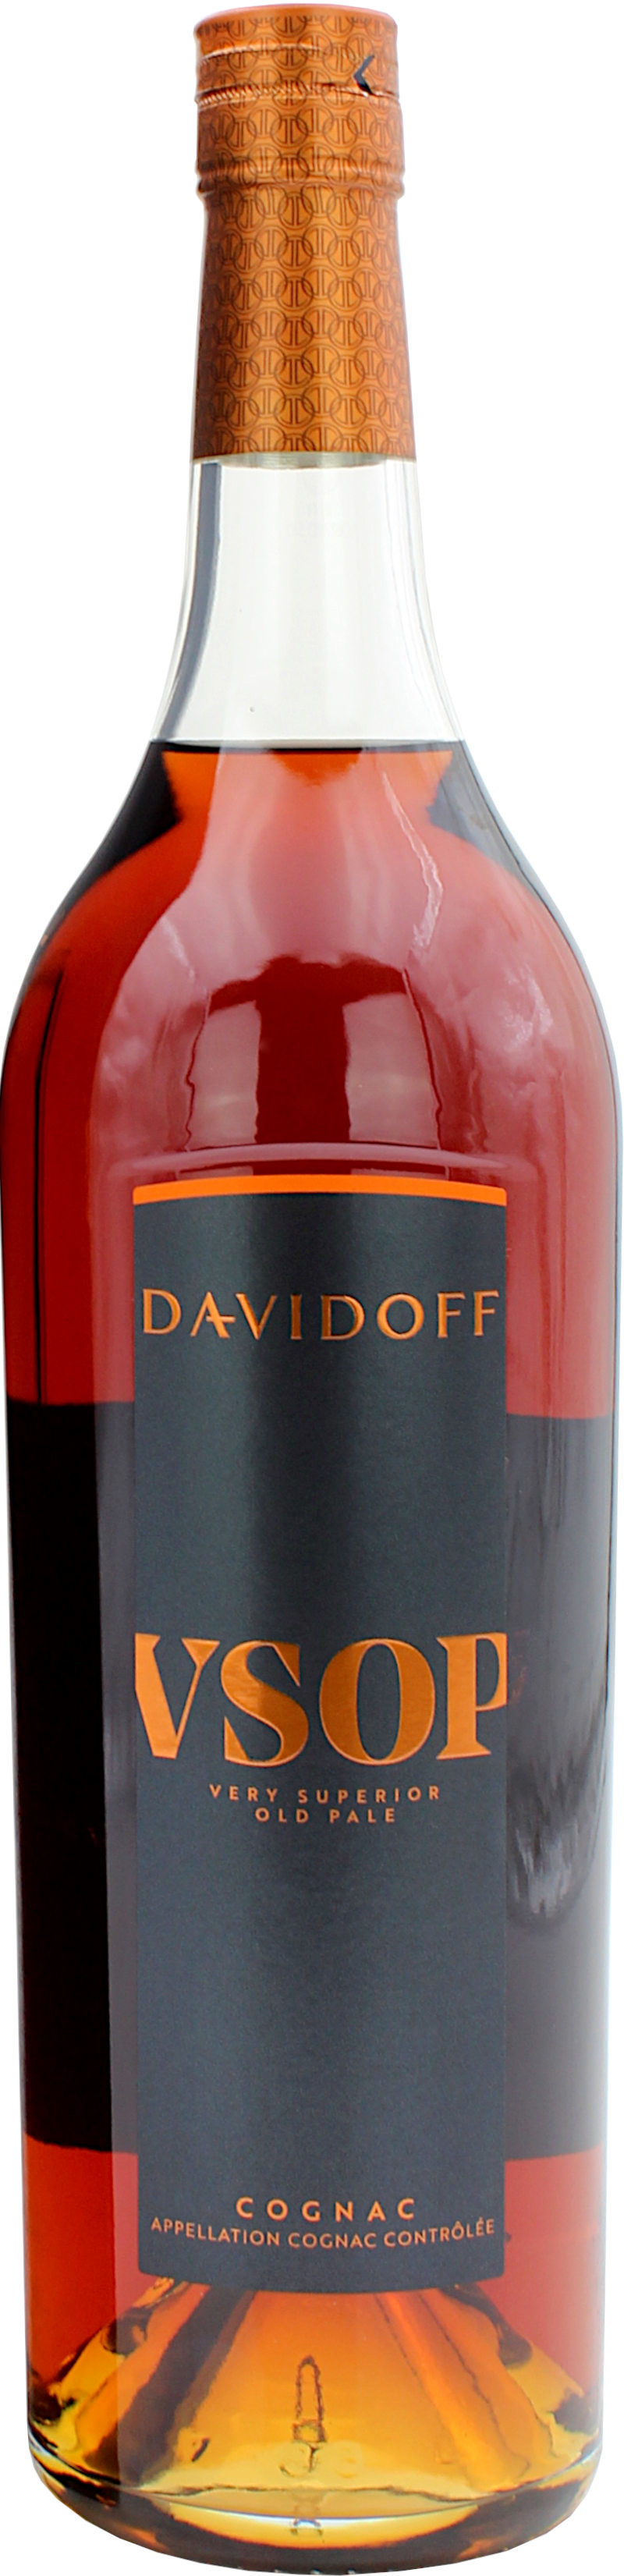 Davidoff VSOP Cognac 40.0% 1Liter